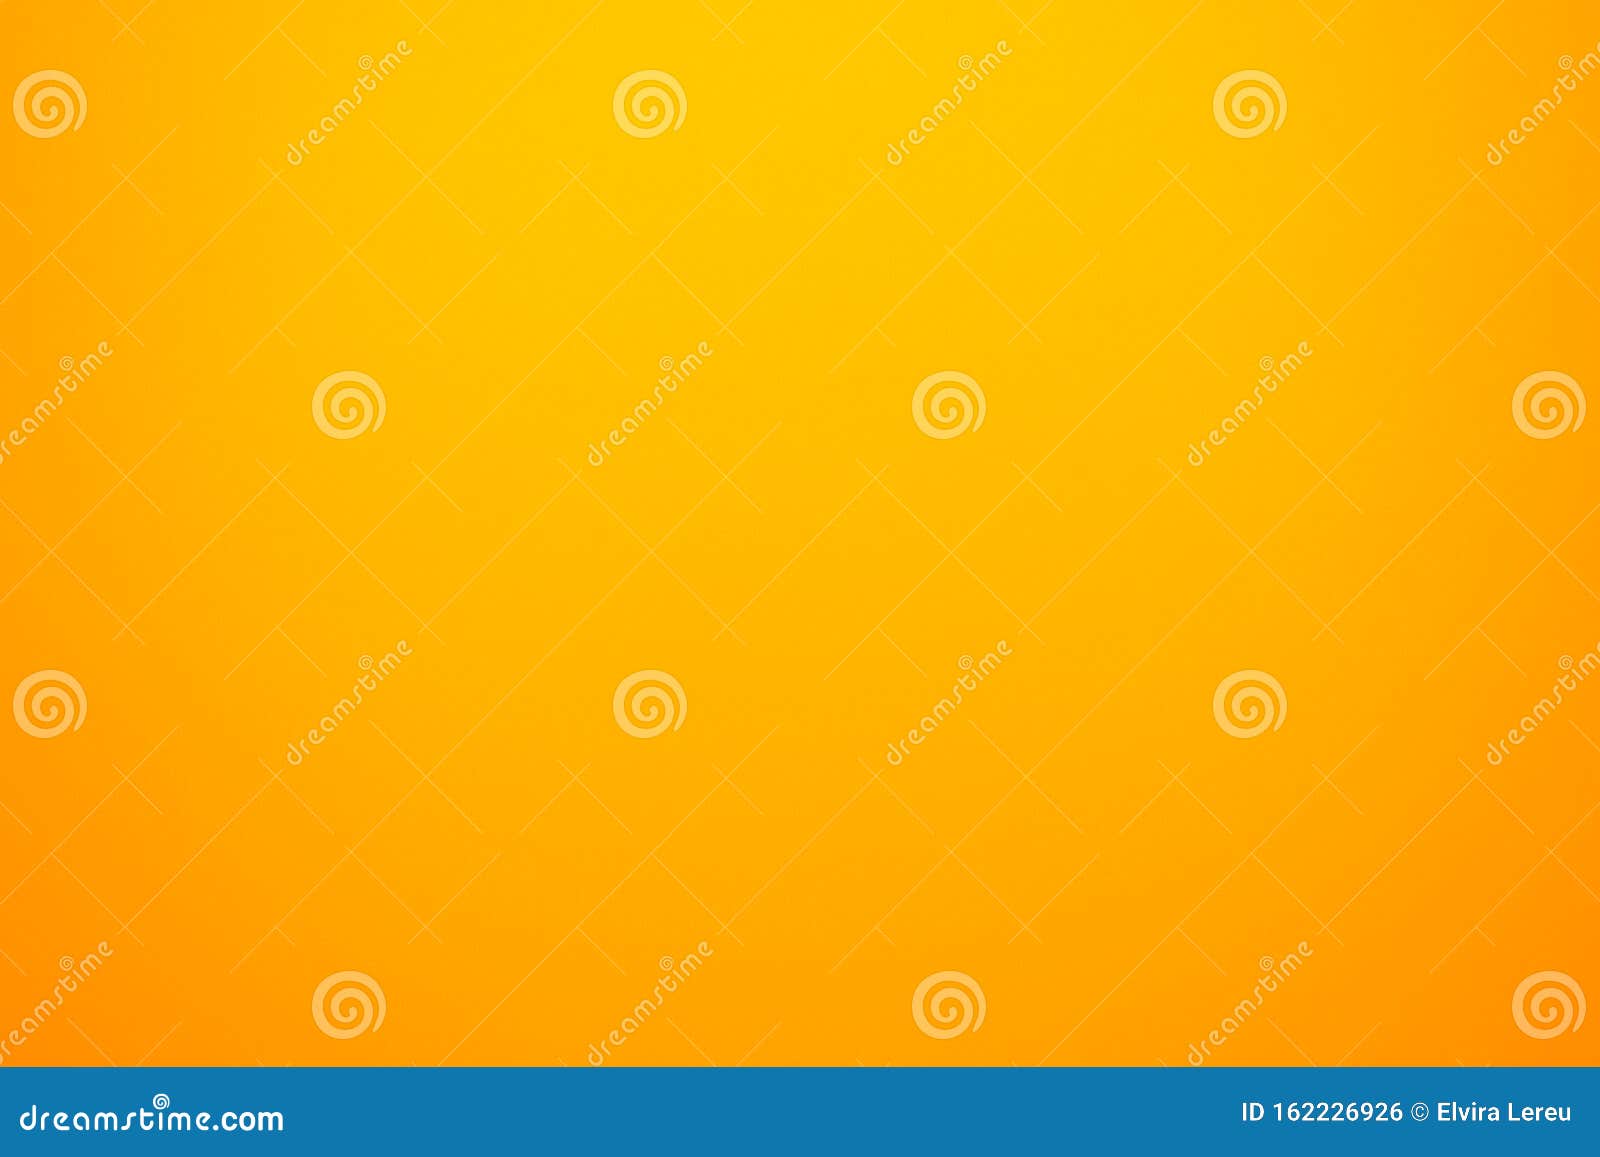 Chào mừng bạn đến với bộ sưu tập hình nền vải màu cam vàng! Những mảng màu ấm áp này sẽ giúp trang trí desktop của bạn trở nên đẹp hơn và tạo cảm giác thoải mái. Nhanh chóng tải xuống để khám phá các mẫu thiết kế tuyệt đẹp này ngay bây giờ!